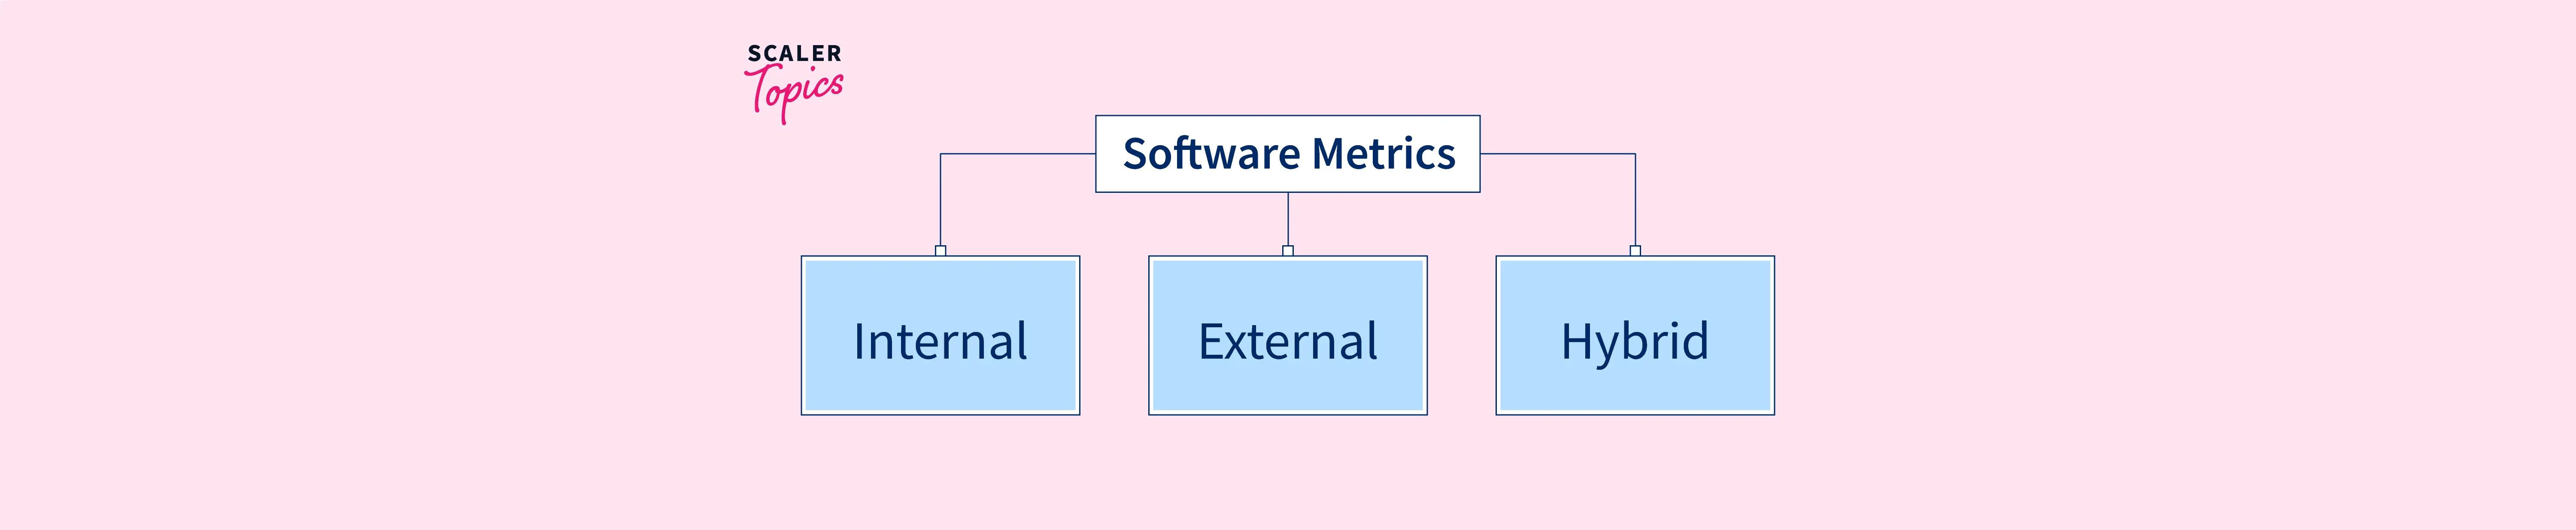 Software Metrics in Software Engineering - Scaler Topics